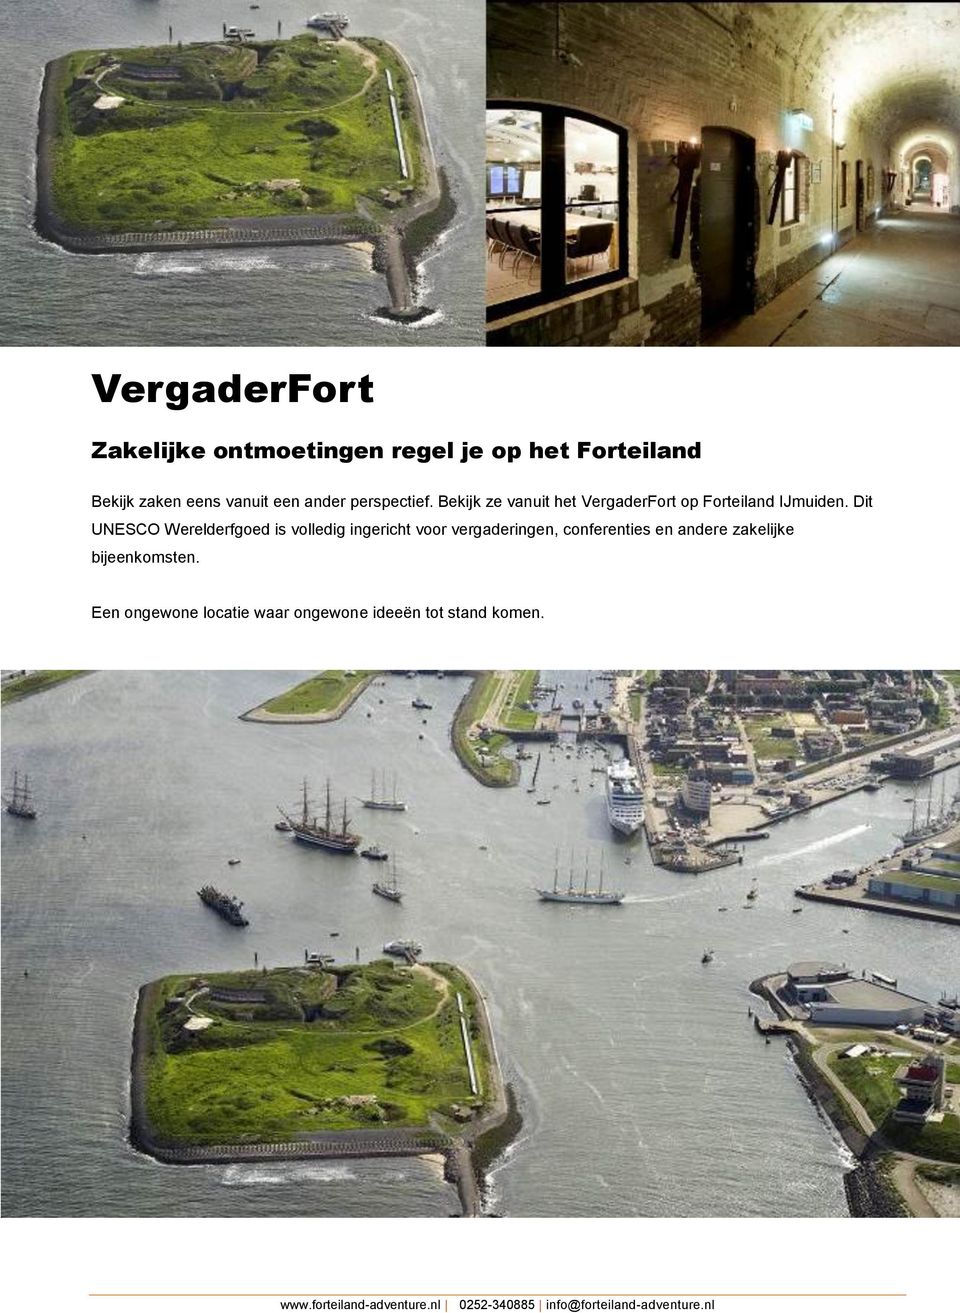 Bekijk ze vanuit het VergaderFort op Forteiland IJmuiden.